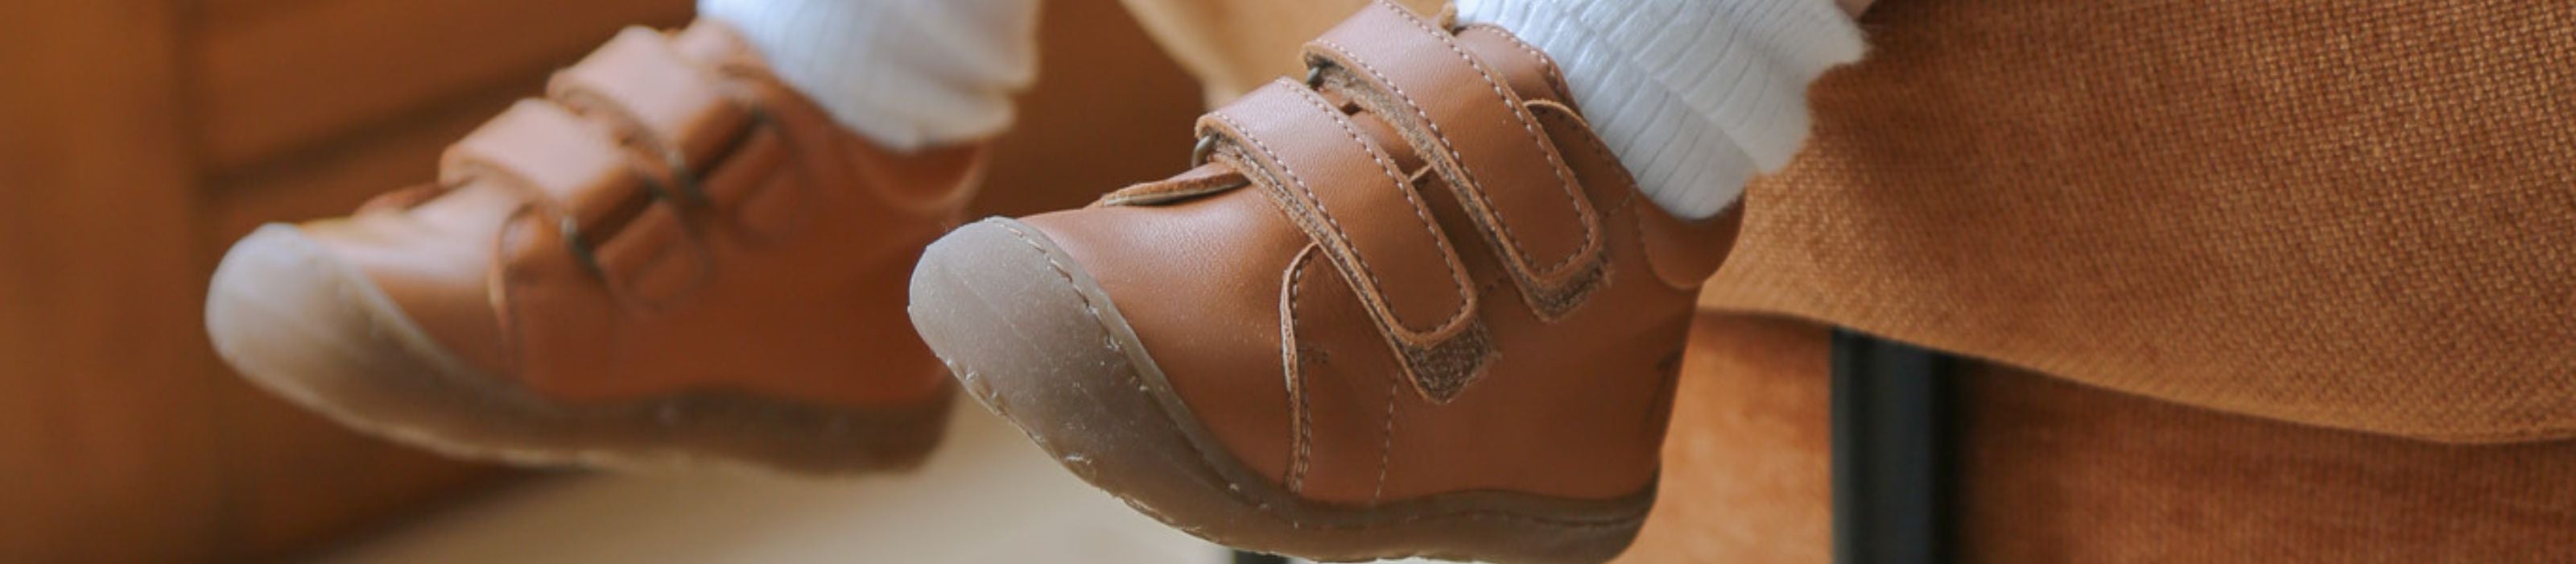 Boots cuir bébé garçon premiers pas - marron, Chaussures